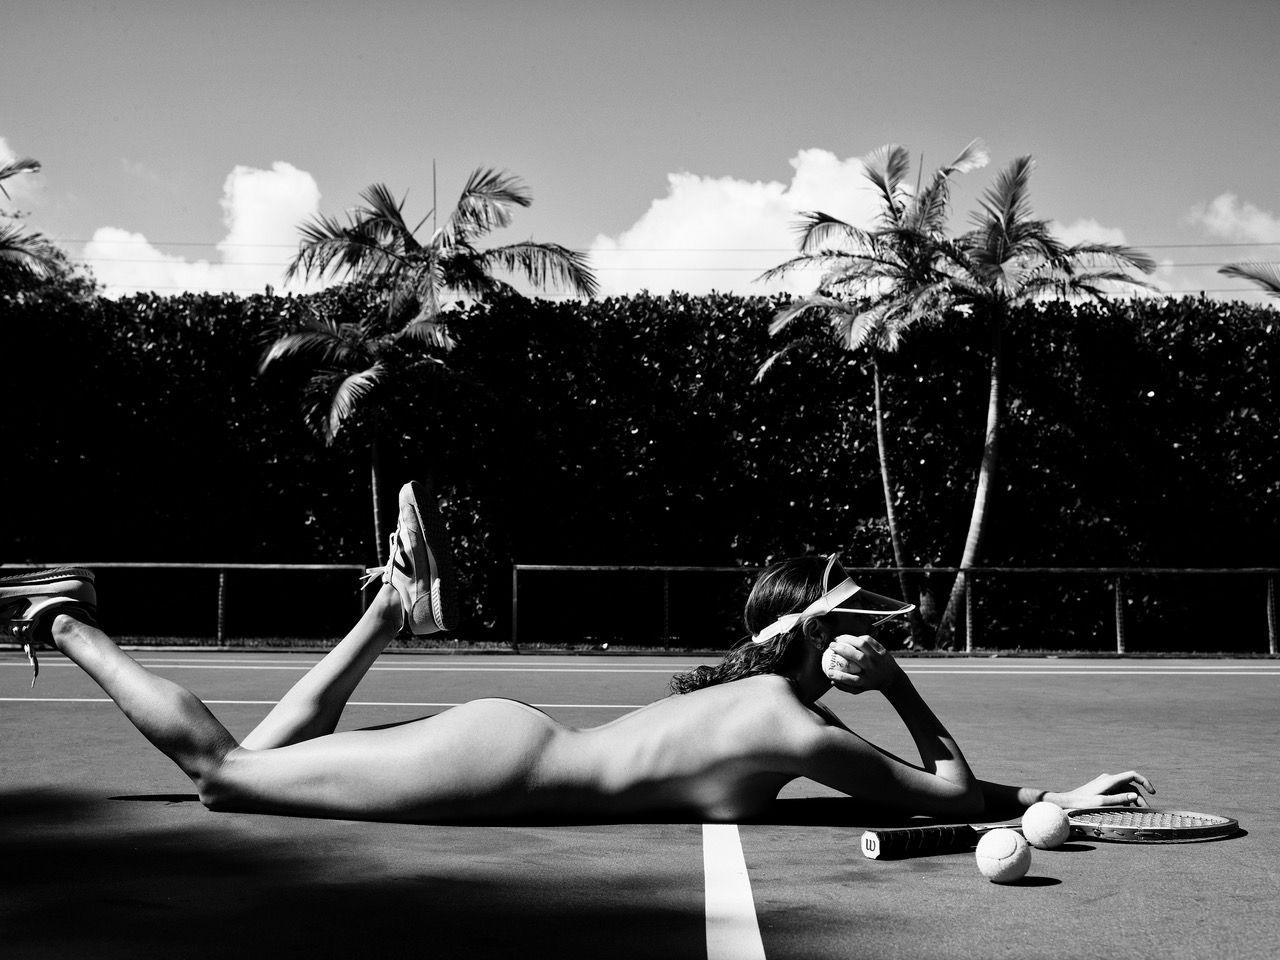 Black and White Photograph Nathan Coe - Le tennis, ça vous dit quelque chose ?